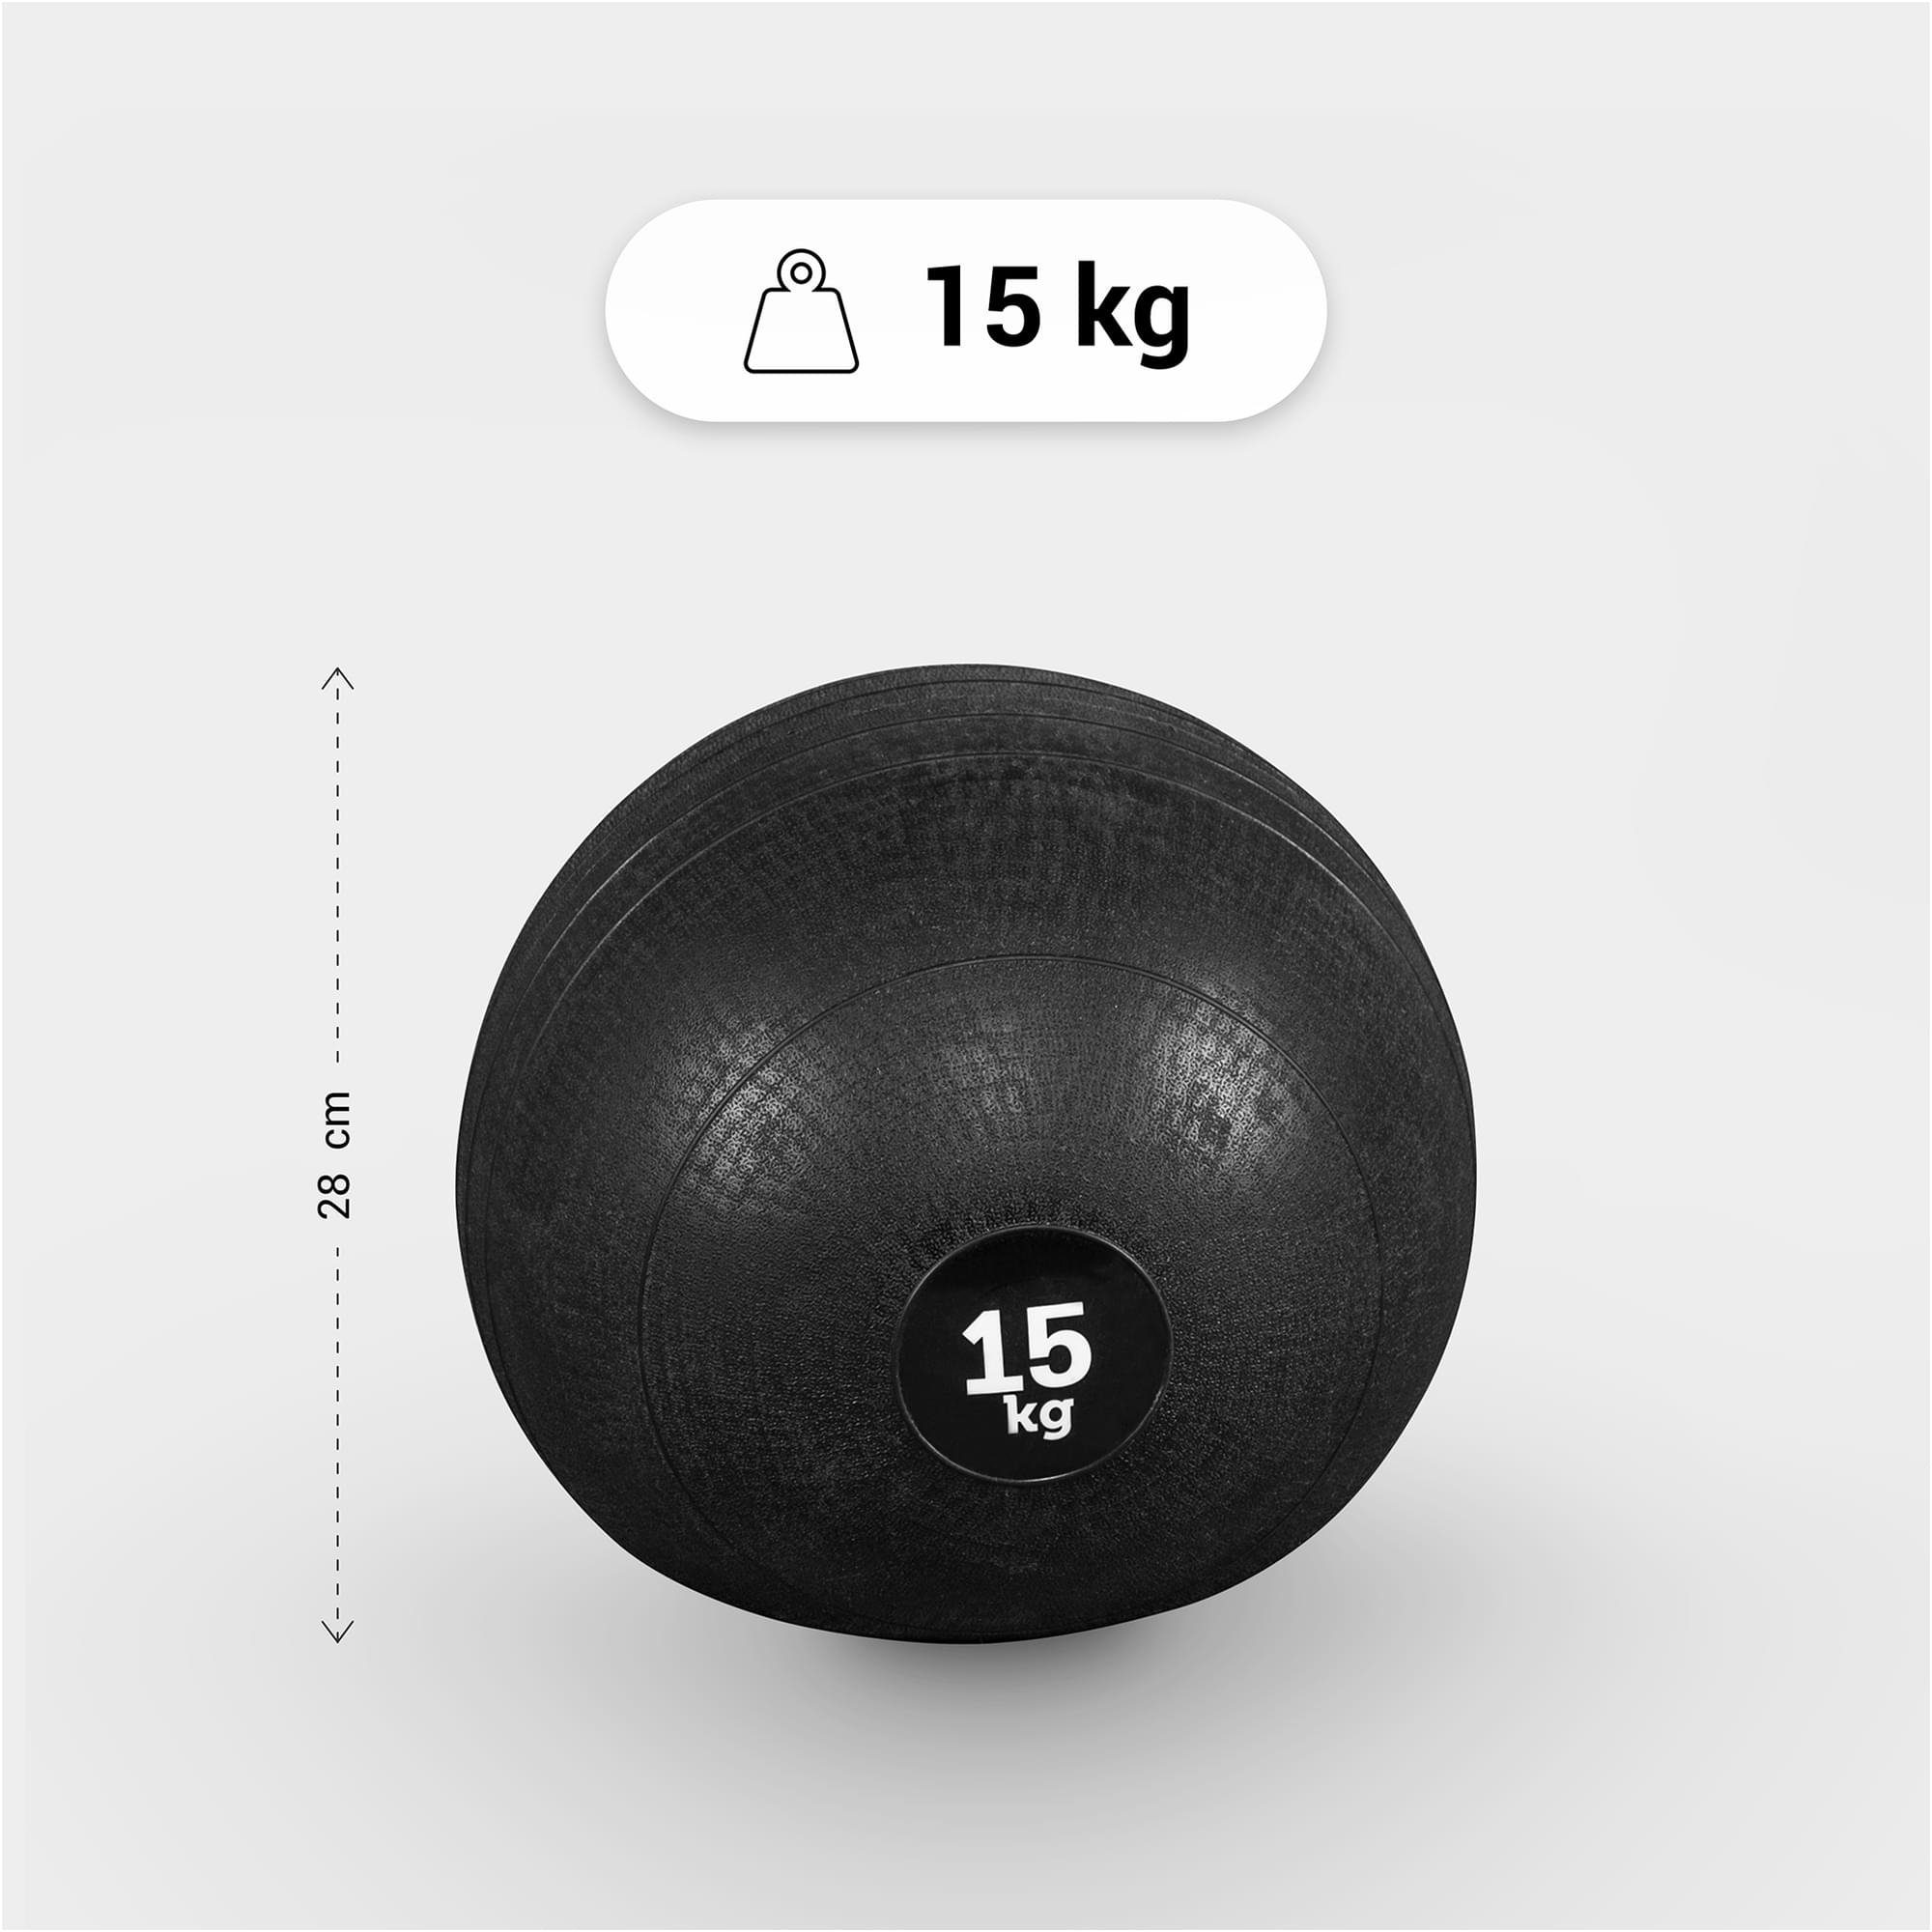 GORILLA SPORTS Medizinball 3kg, 5kg, Oberfläche 7kg, mit 25kg Griffiger 20kg, Set 10kg, Einzeln/Set, 15kg